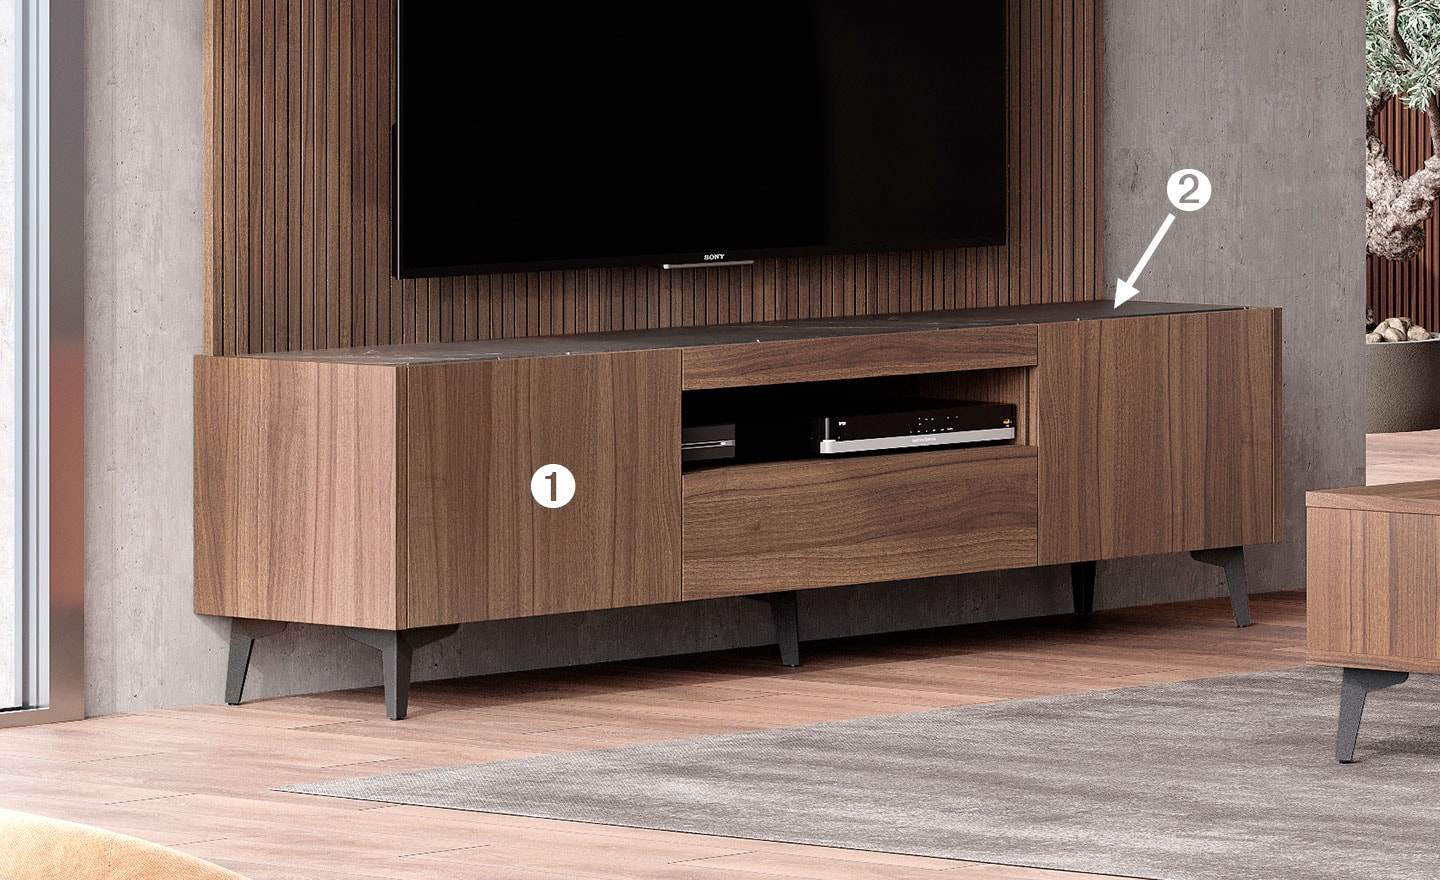 Móvel de TV Aqua 06 – Design Moderno e Funcional | Moveistore